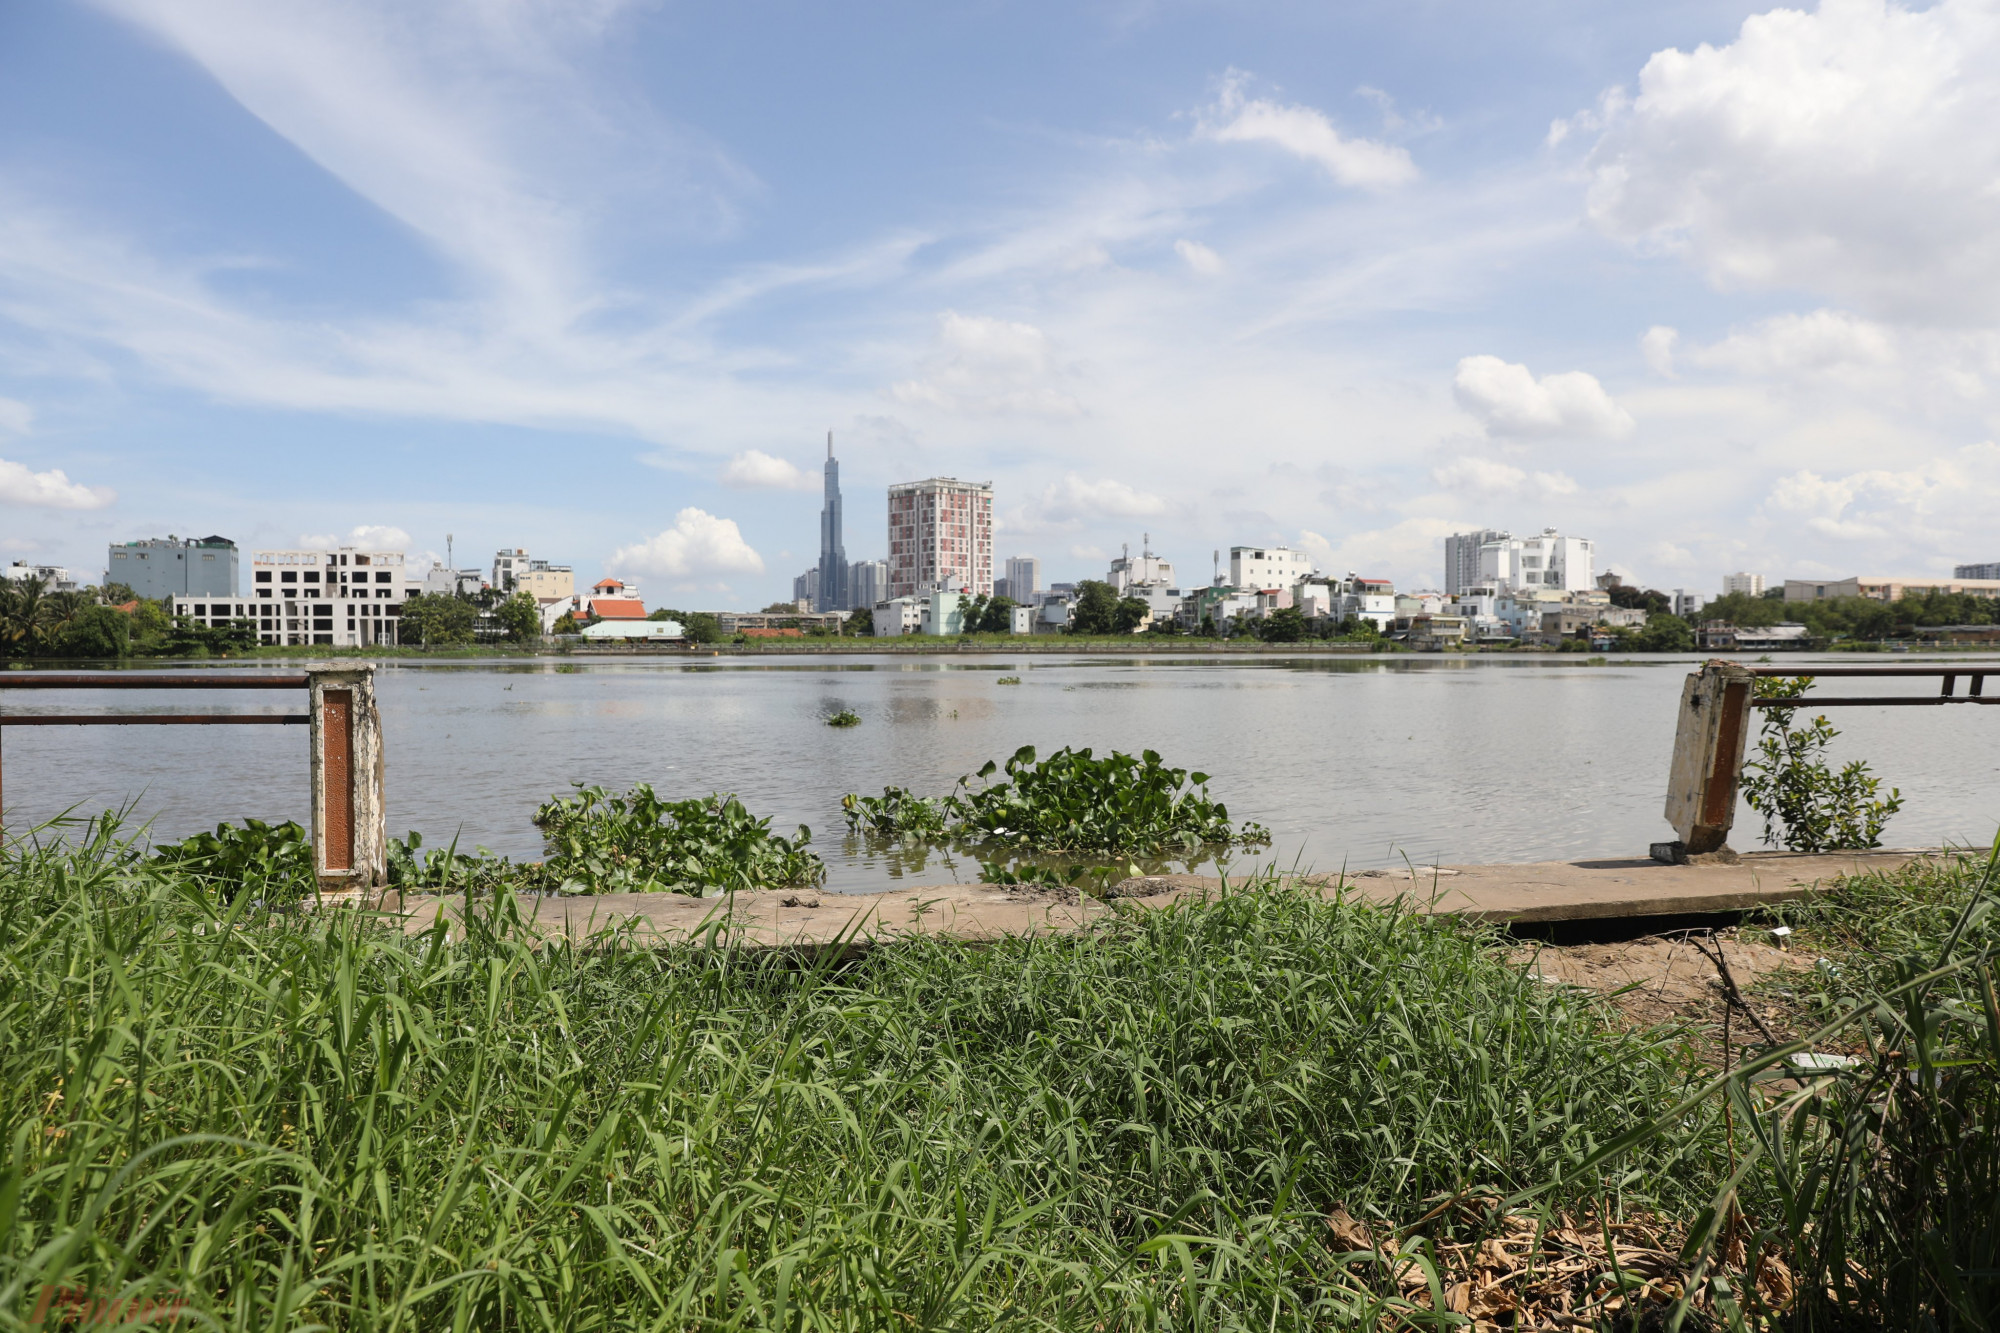 Phóng viên báo Phụ Nữ TPHCM ghi nhận tại bờ kè trên sông Sài Gòn, đoạn qua đường 18 (phường Hiệp Bình Chánh, TP Thủ Đức), 200 m phần lan can bêtông và sắt thép cao khoảng 1,5 m không còn nguyên vẹn. 